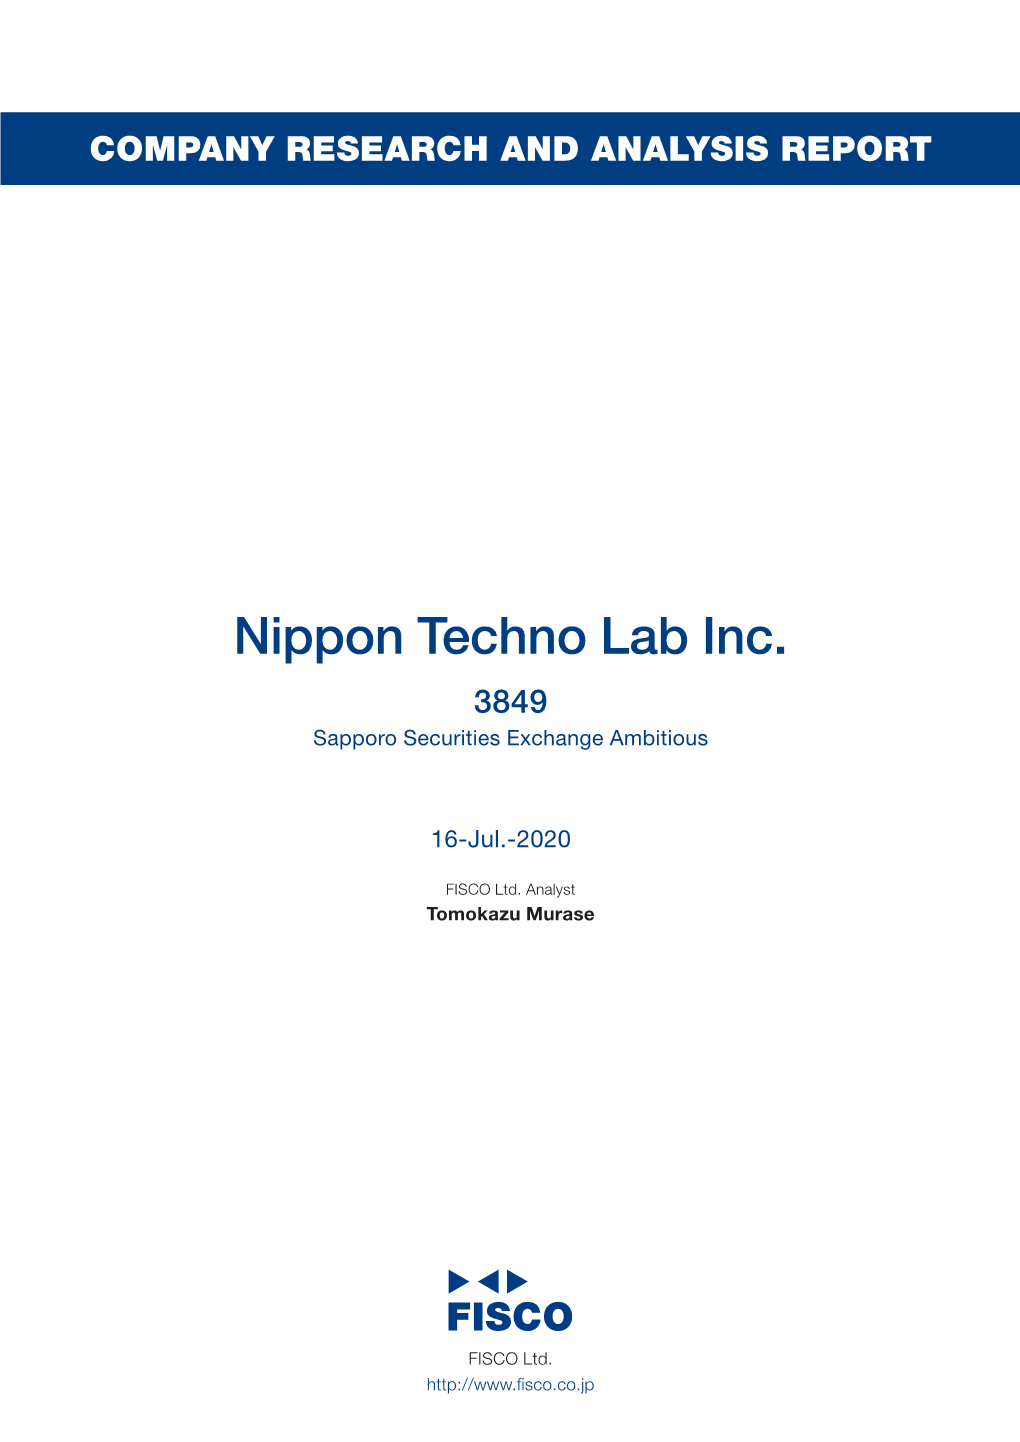 Nippon Techno Lab, Inc.&lt;3849&gt;